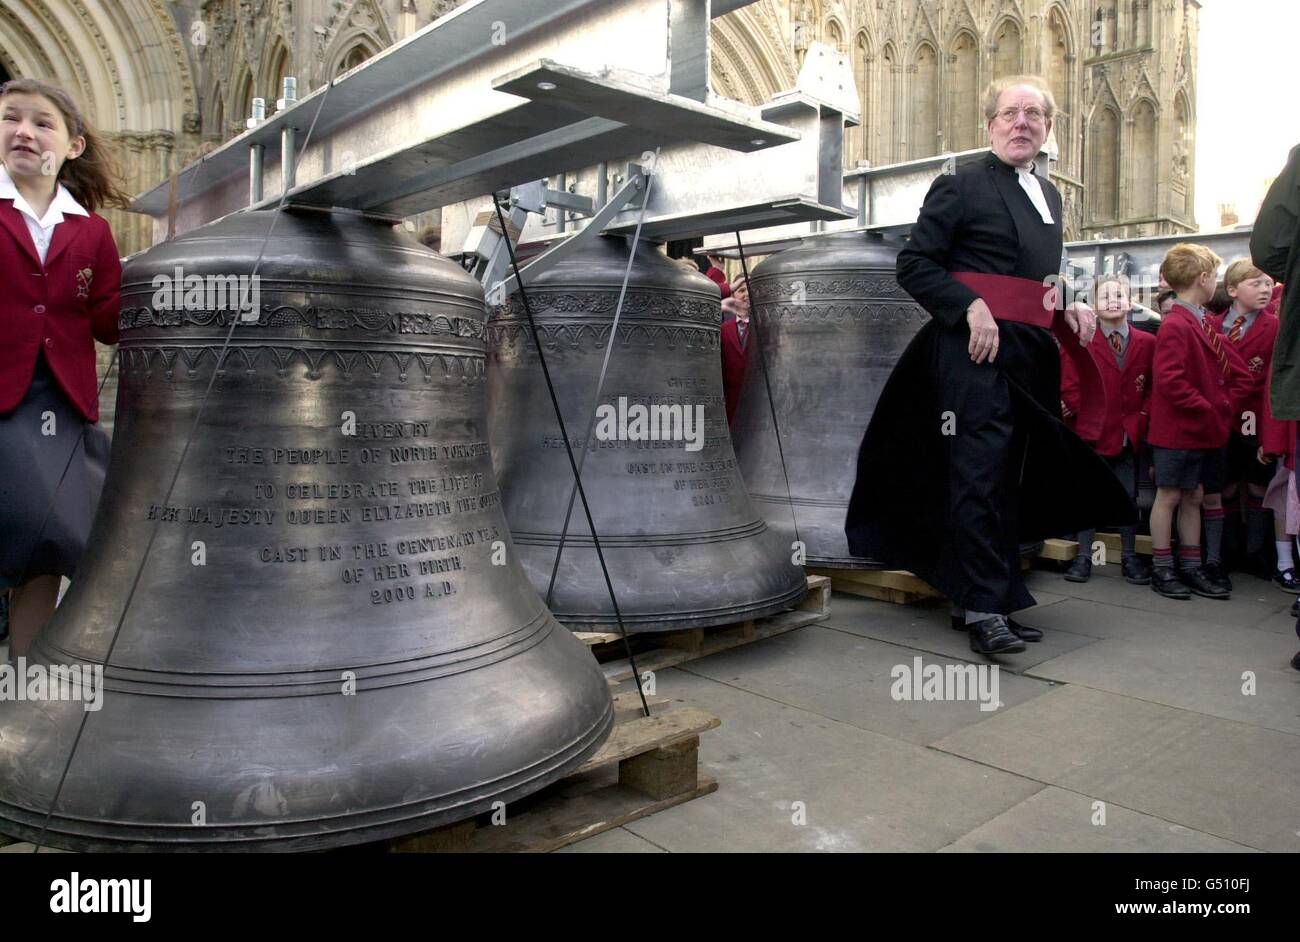 Le doyen de York, le très Revd Dr Raymond Furnell fait un court service de dévouement pour les six nouvelles cloches de chiming pour commémorer la vie de la reine mère dans son année de centenaire à York Minster, York où les cloches ont été installées. Banque D'Images